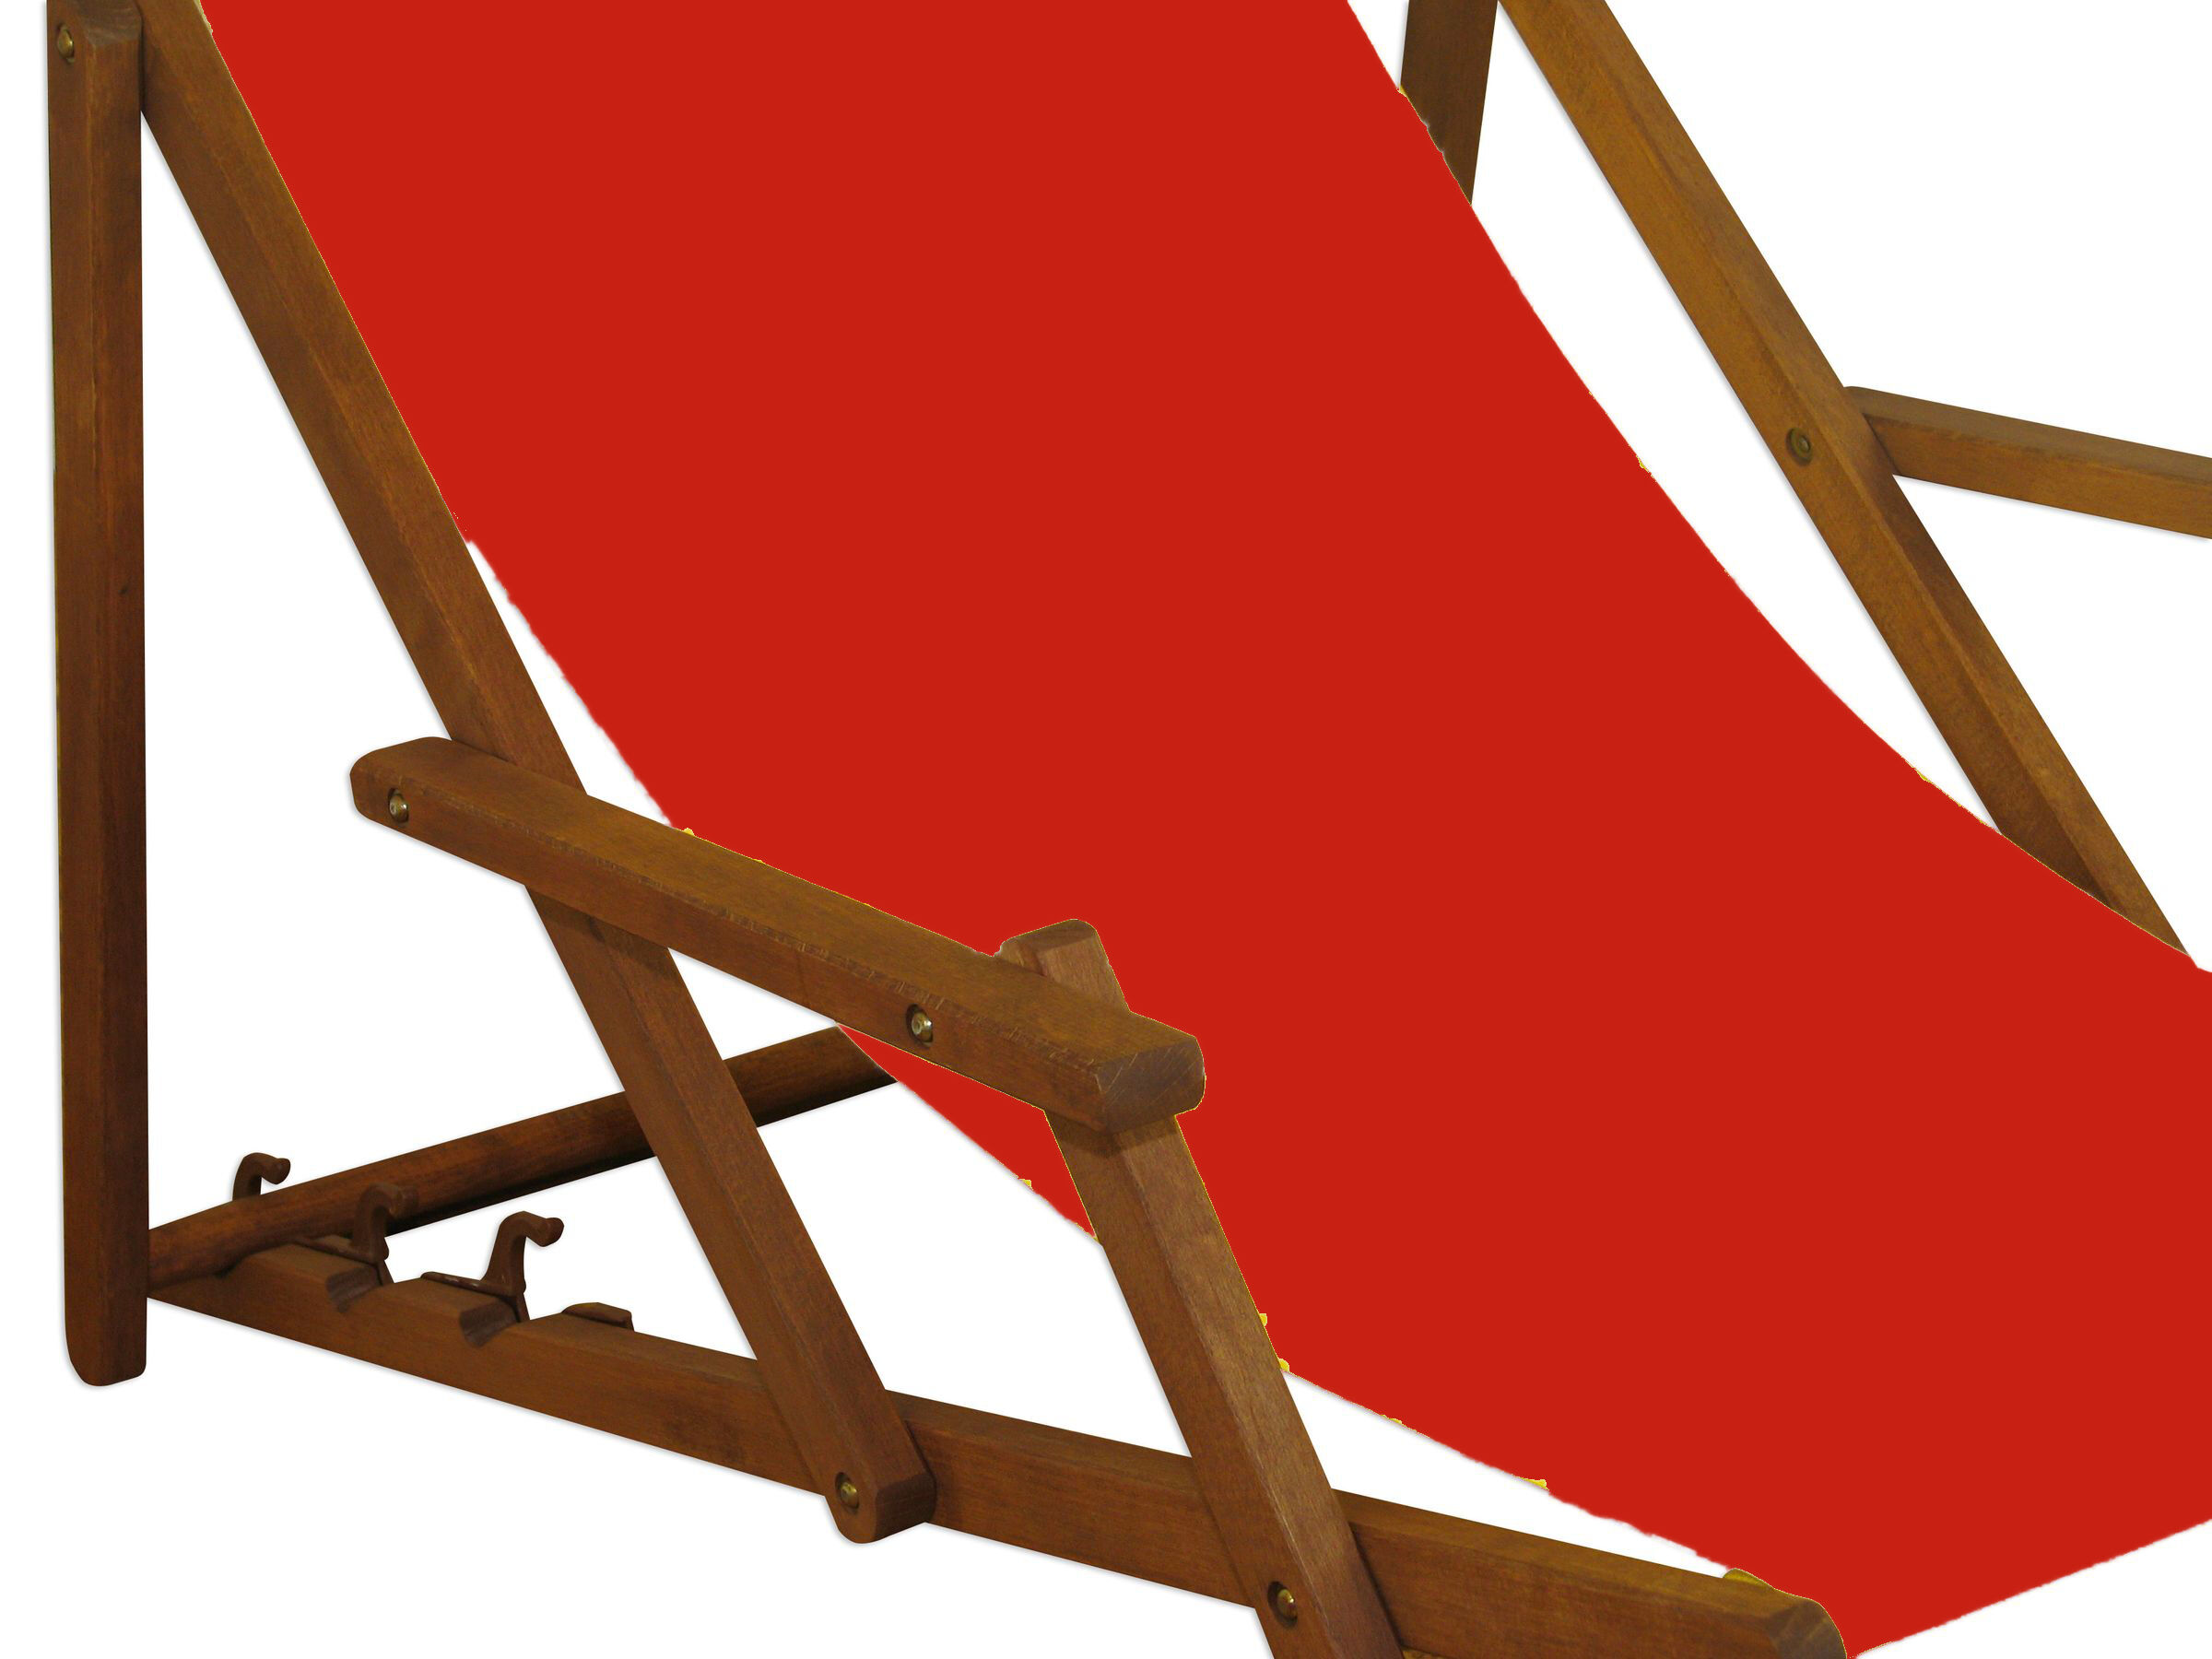 Detailbild des roten Sitzstoffs